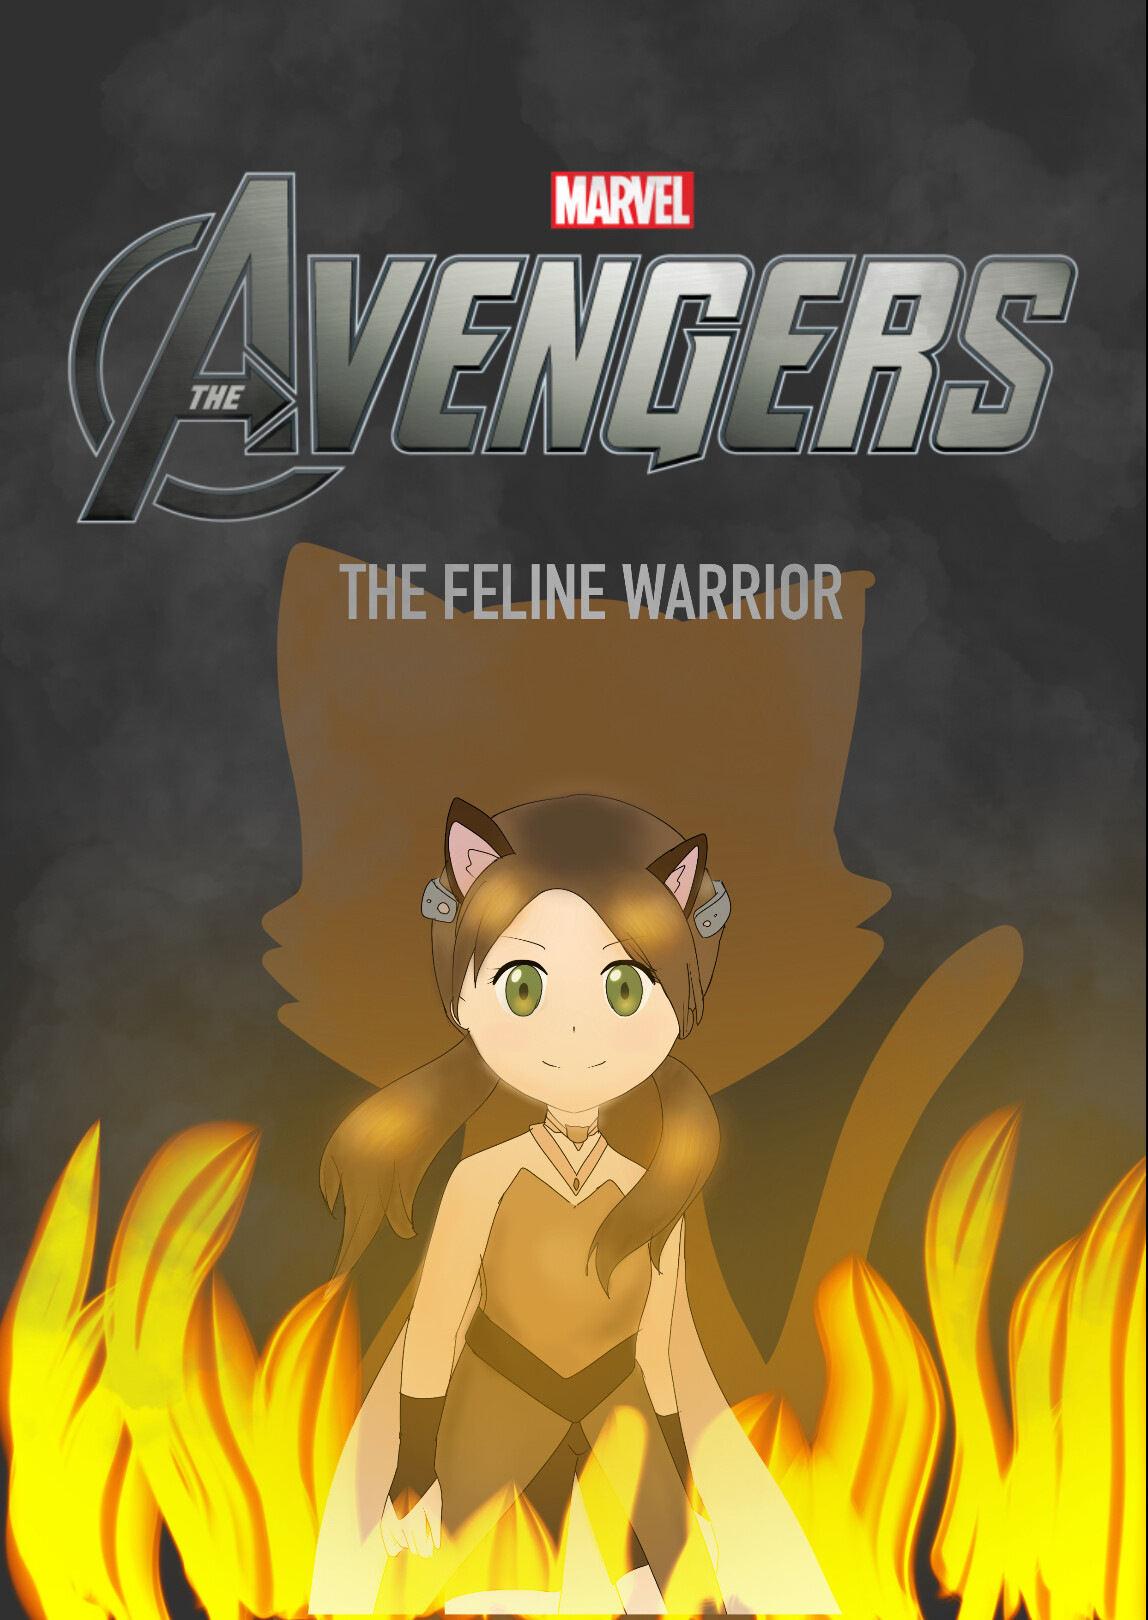 ArtStation - Me as an Avenger (used the Avengers logo clip art)